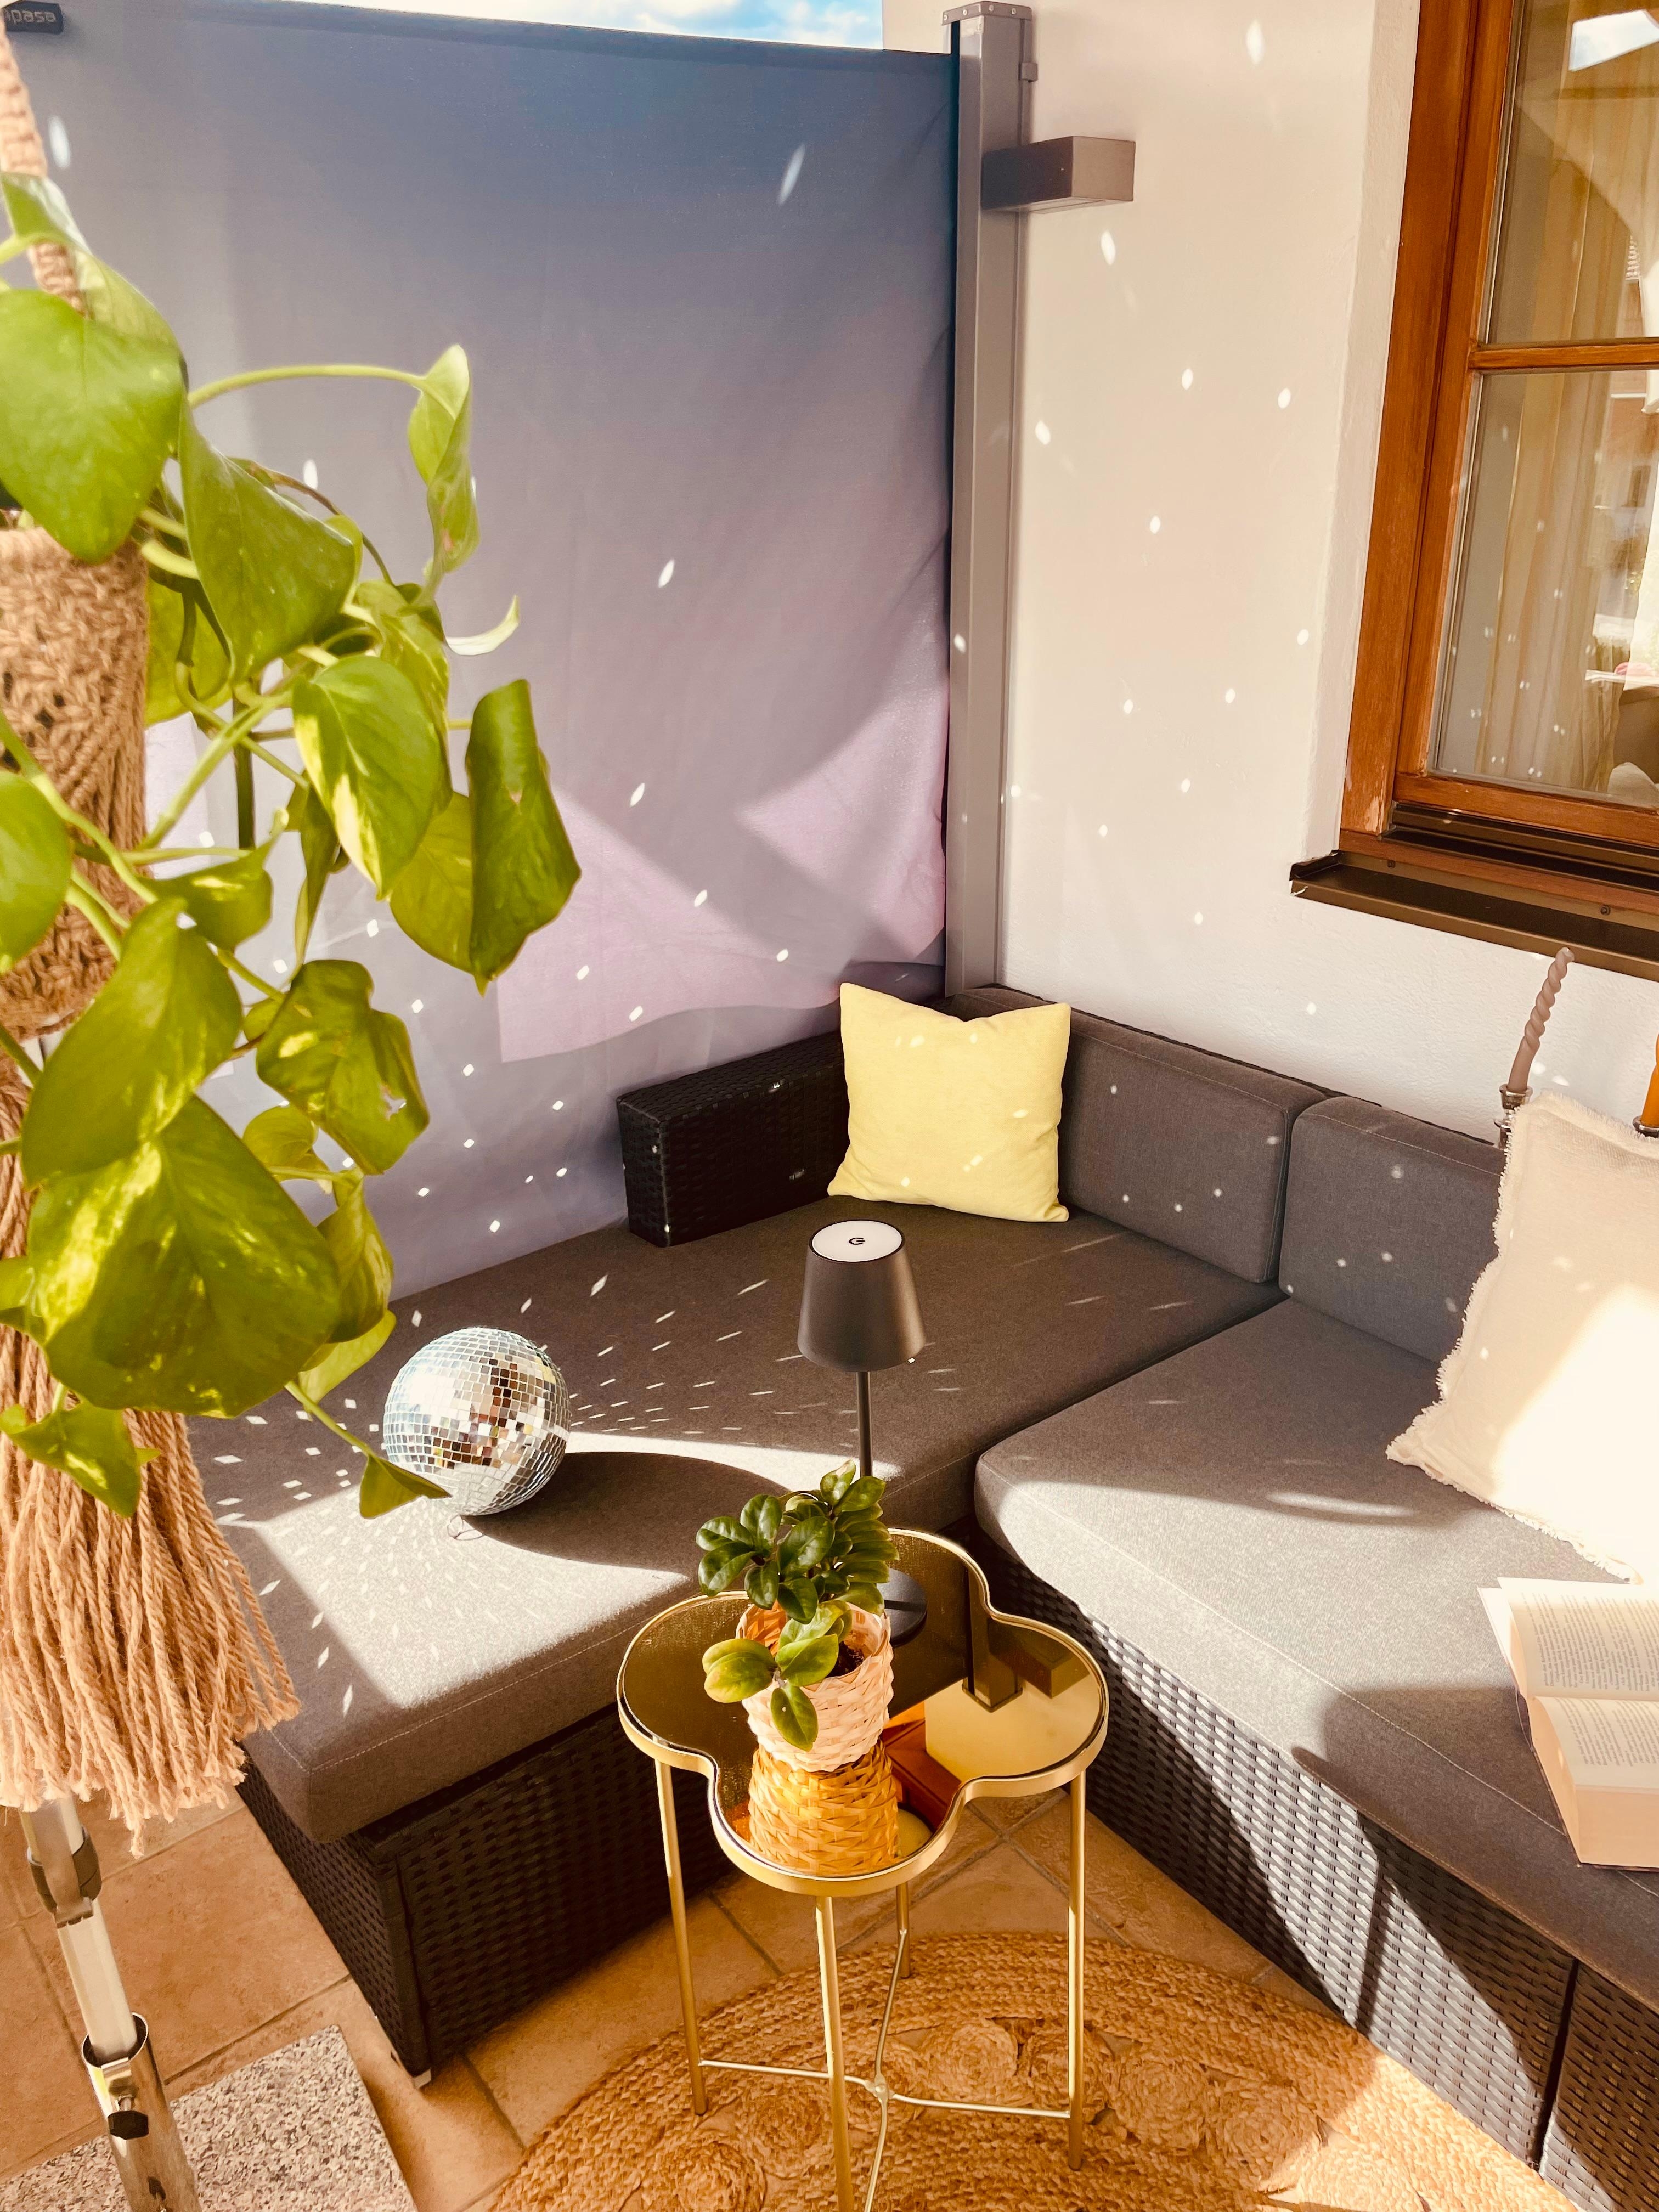 Meine allerliebste #lounge auf dem #balkon. #balkonliebe #loungecke #justrelax 